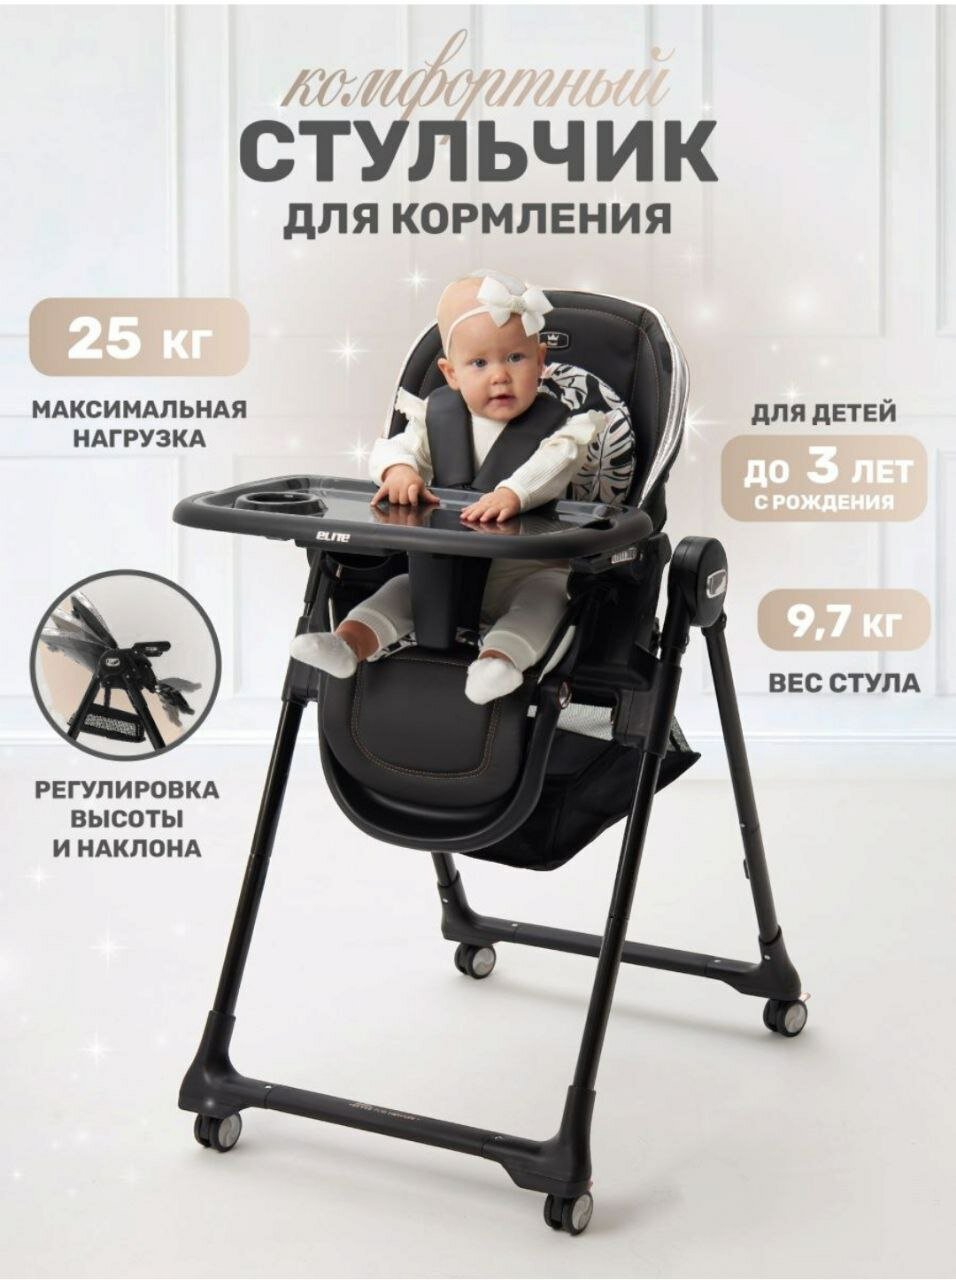 Стульчик для кормления ребенка Danki Elite детский складной стульчик 0 + цвет Черный серебро